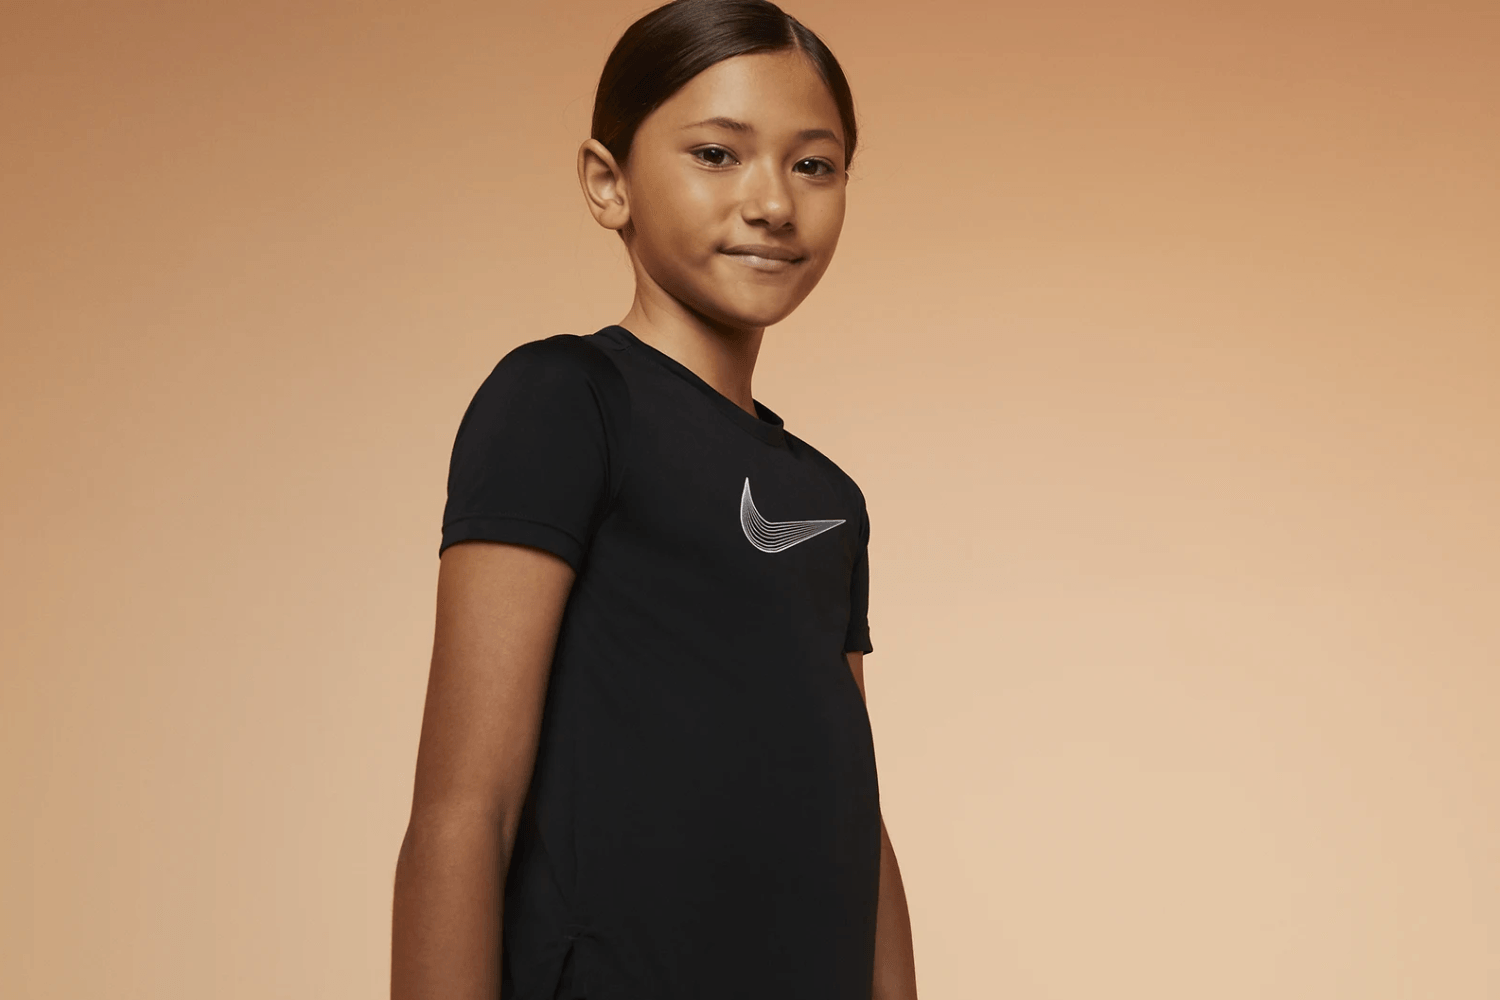 De nieuwe Nike Teen Girls collectie staat nu online